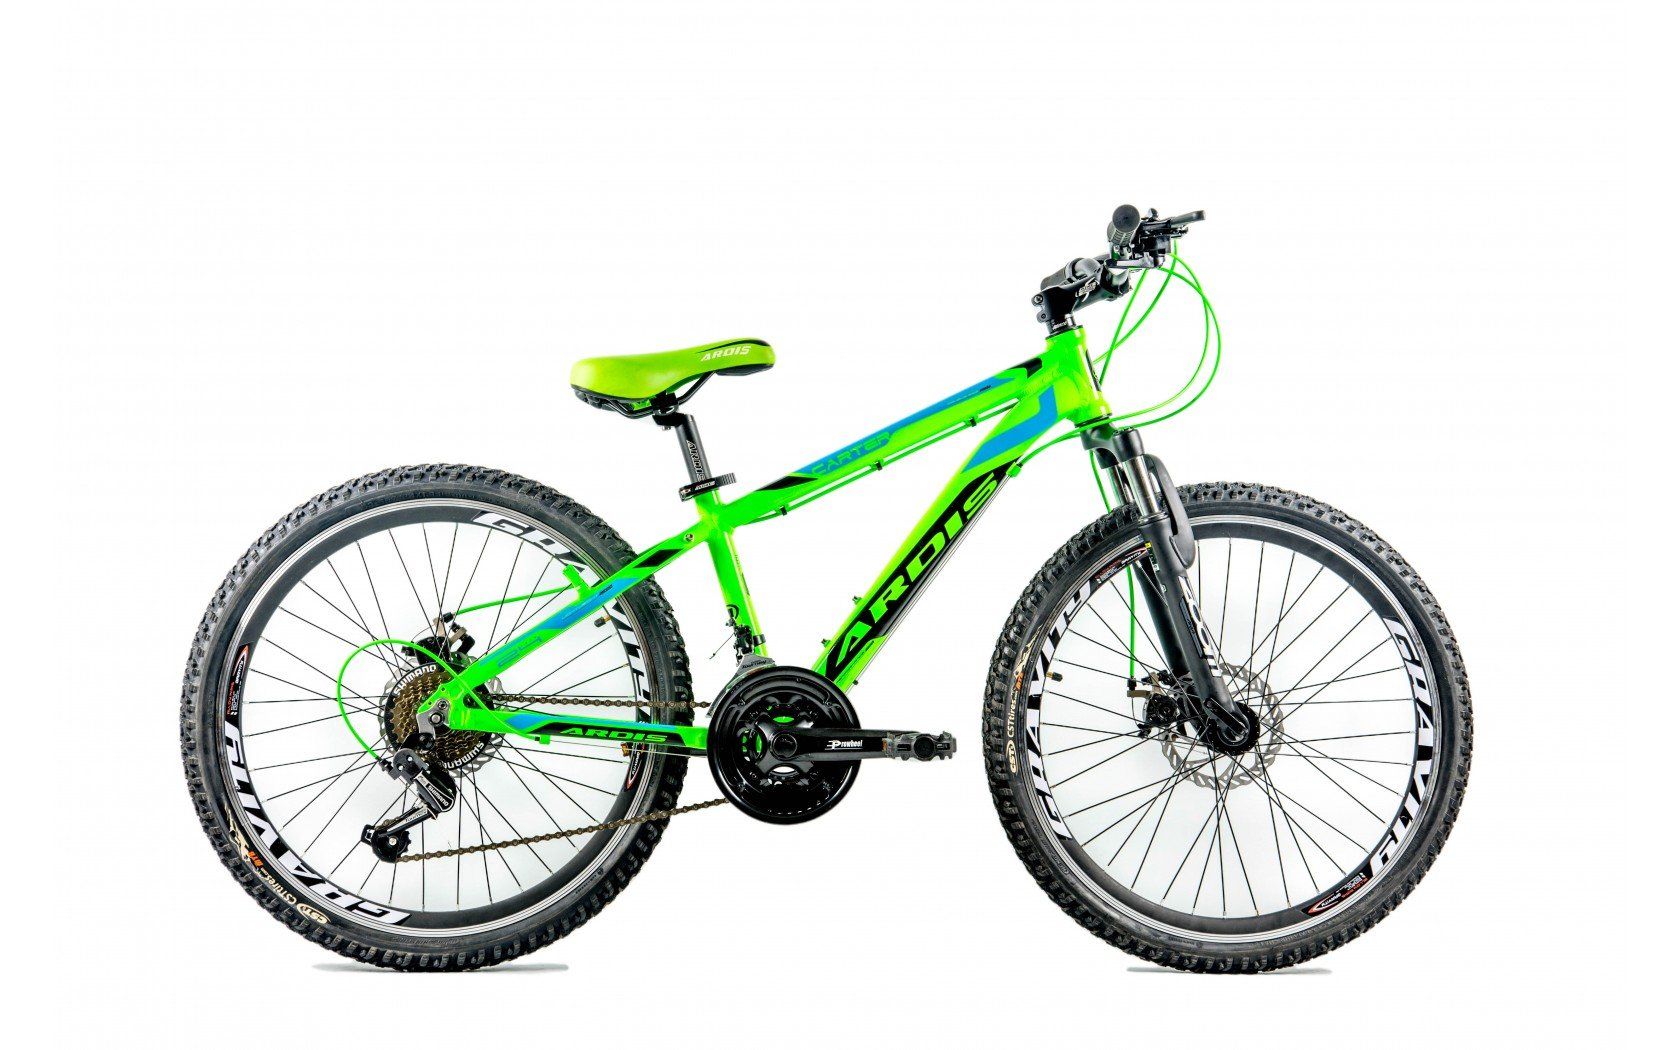 Подростковый горный (MTB) велосипед Ardis Carter MTB 24. Ardis зеленый велосипед. Велосипеды Ардис колеса на 24. Велосипед подростковый 24 дюйма Green. Купить велосипед 24 рама